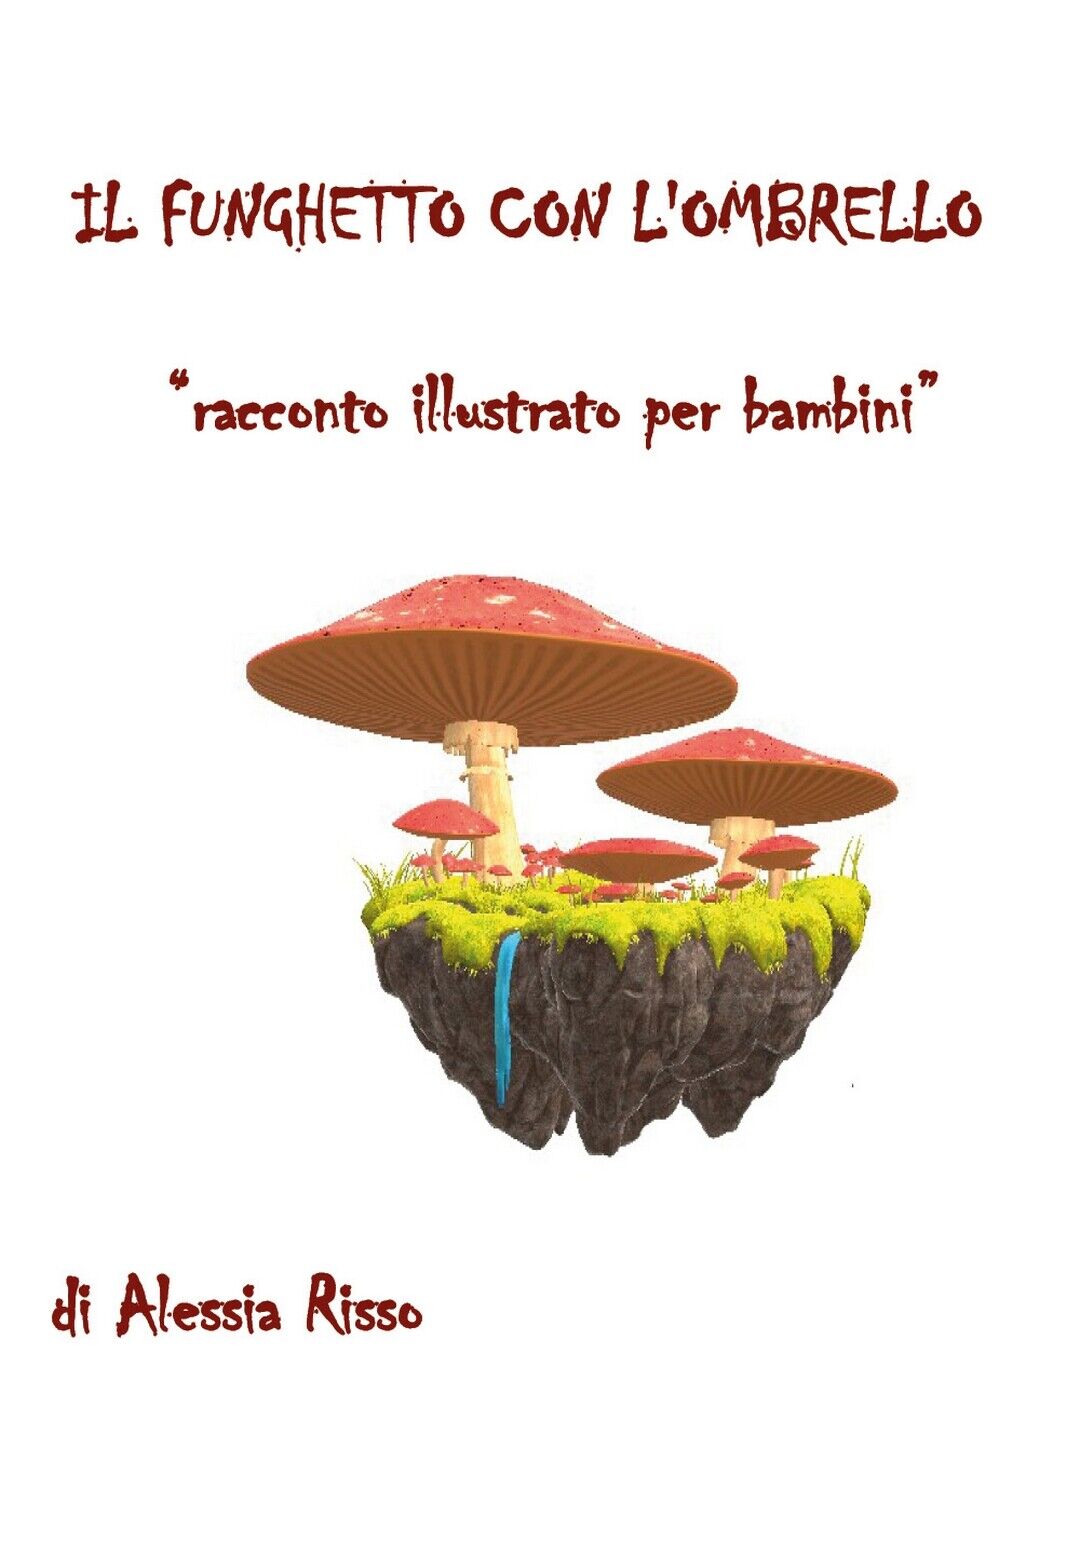 Il funghetto con L'ombrello. Racconto illustrato per bambini  di Alessia Risso